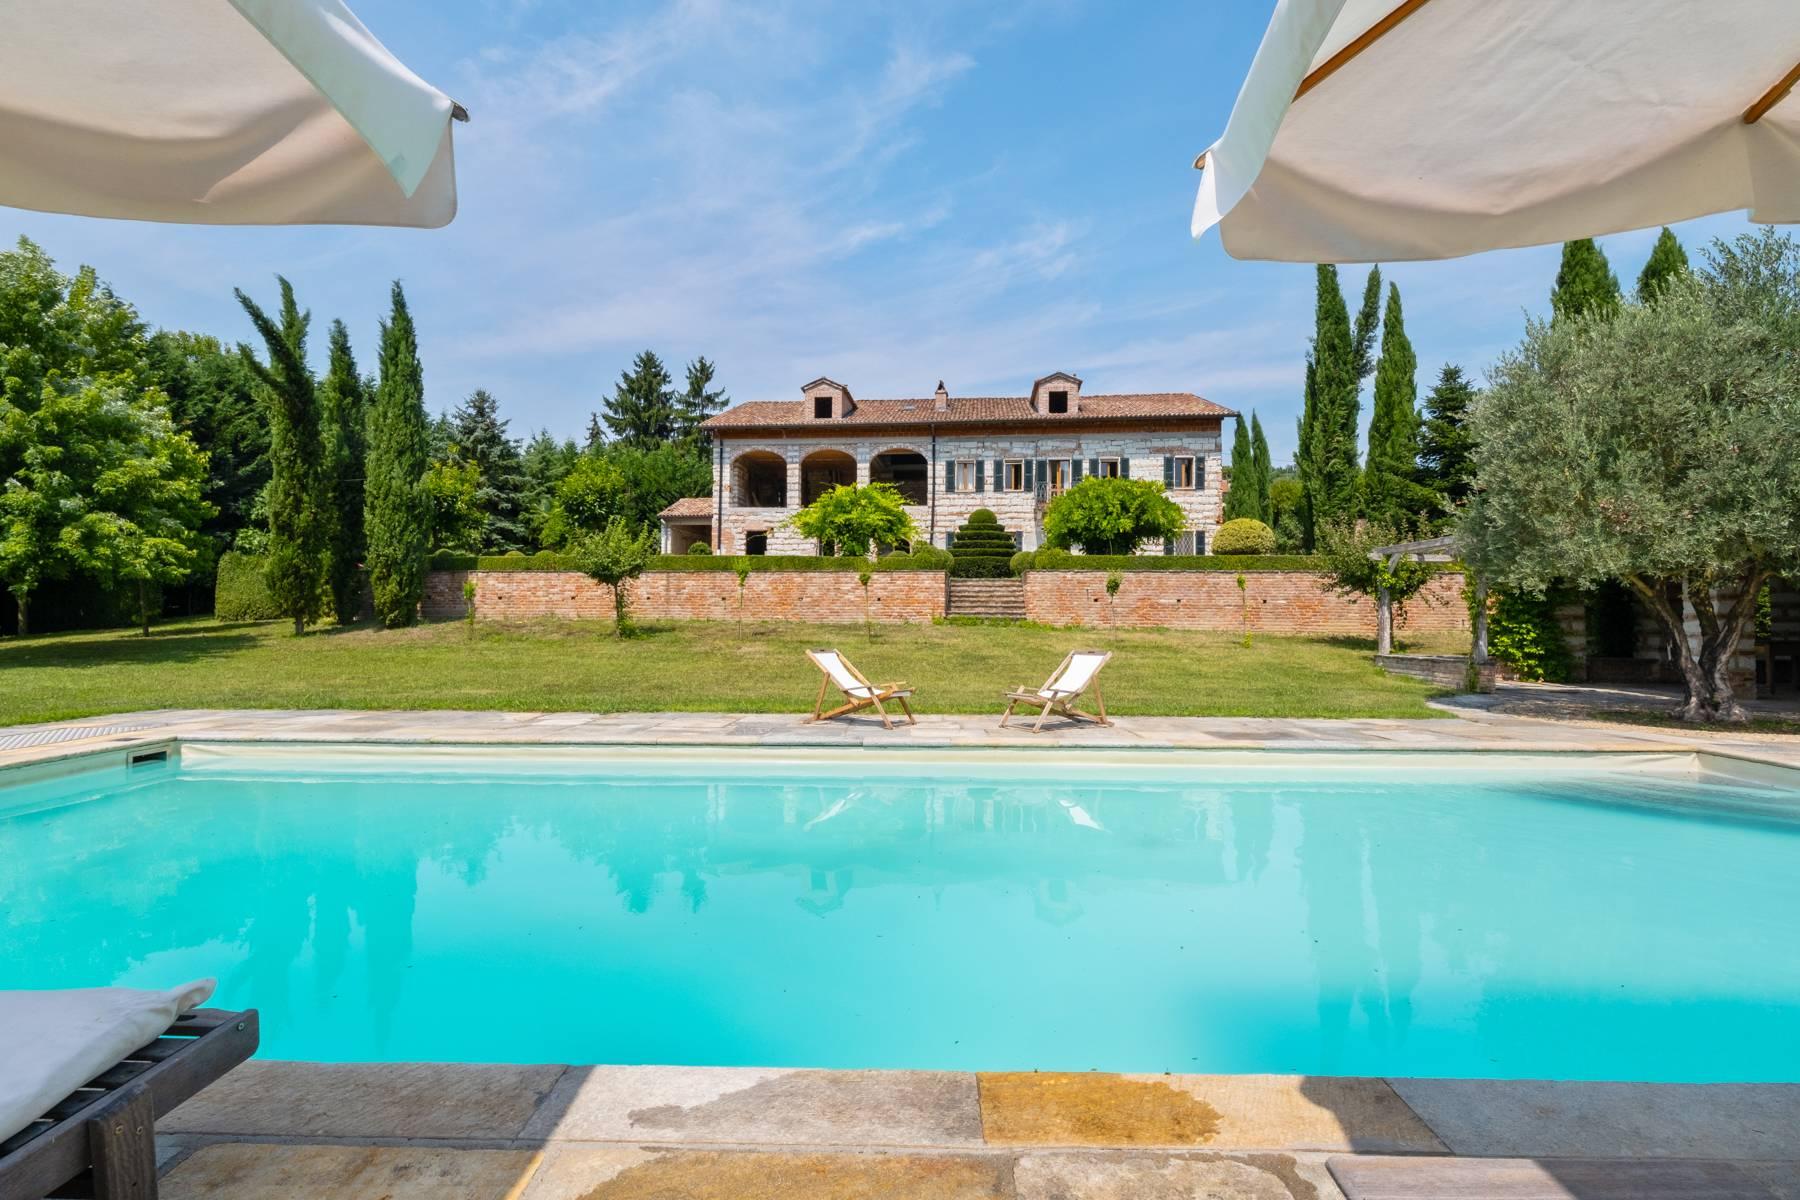 Affascinante casale con piscina nel verde delle colline del Monferrato - 1